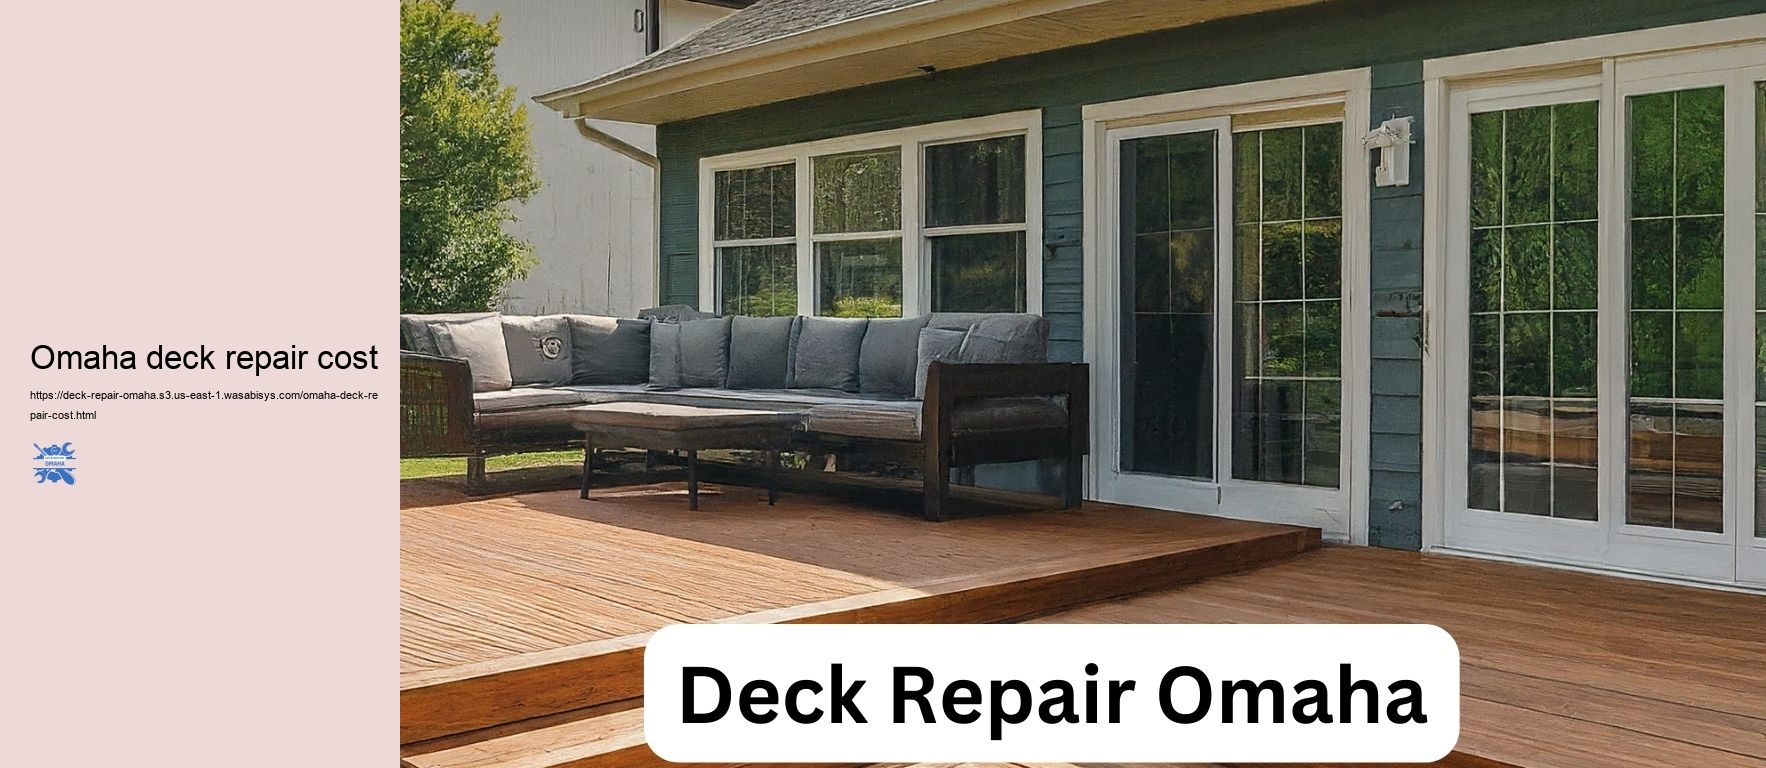 Omaha deck repair cost